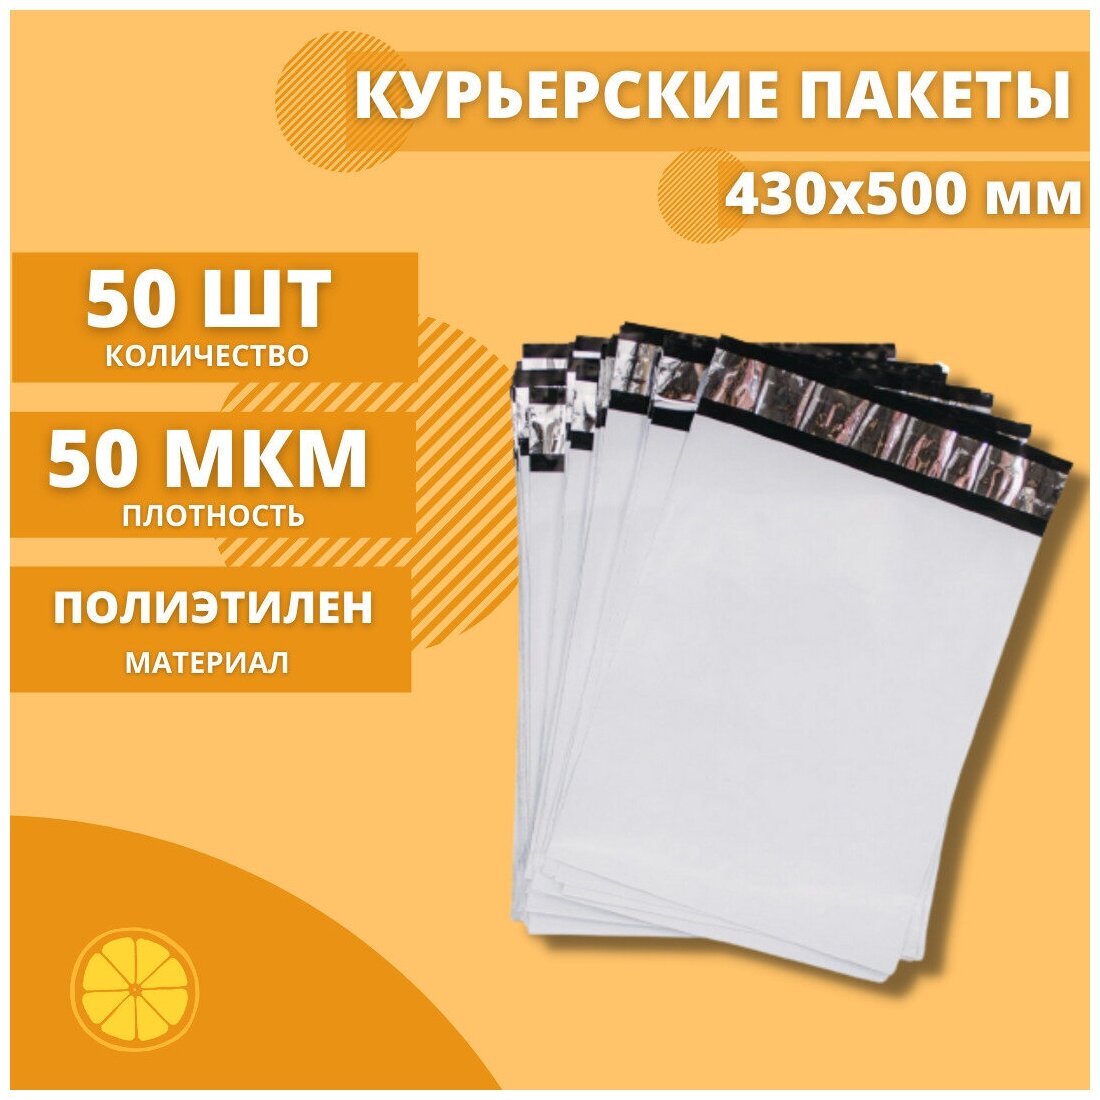 Курьерский пакет 430*500мм (50мкм), без кармана, 50 шт. / сейф пакет для маркетплейсов / пакет с клеевым клапаном